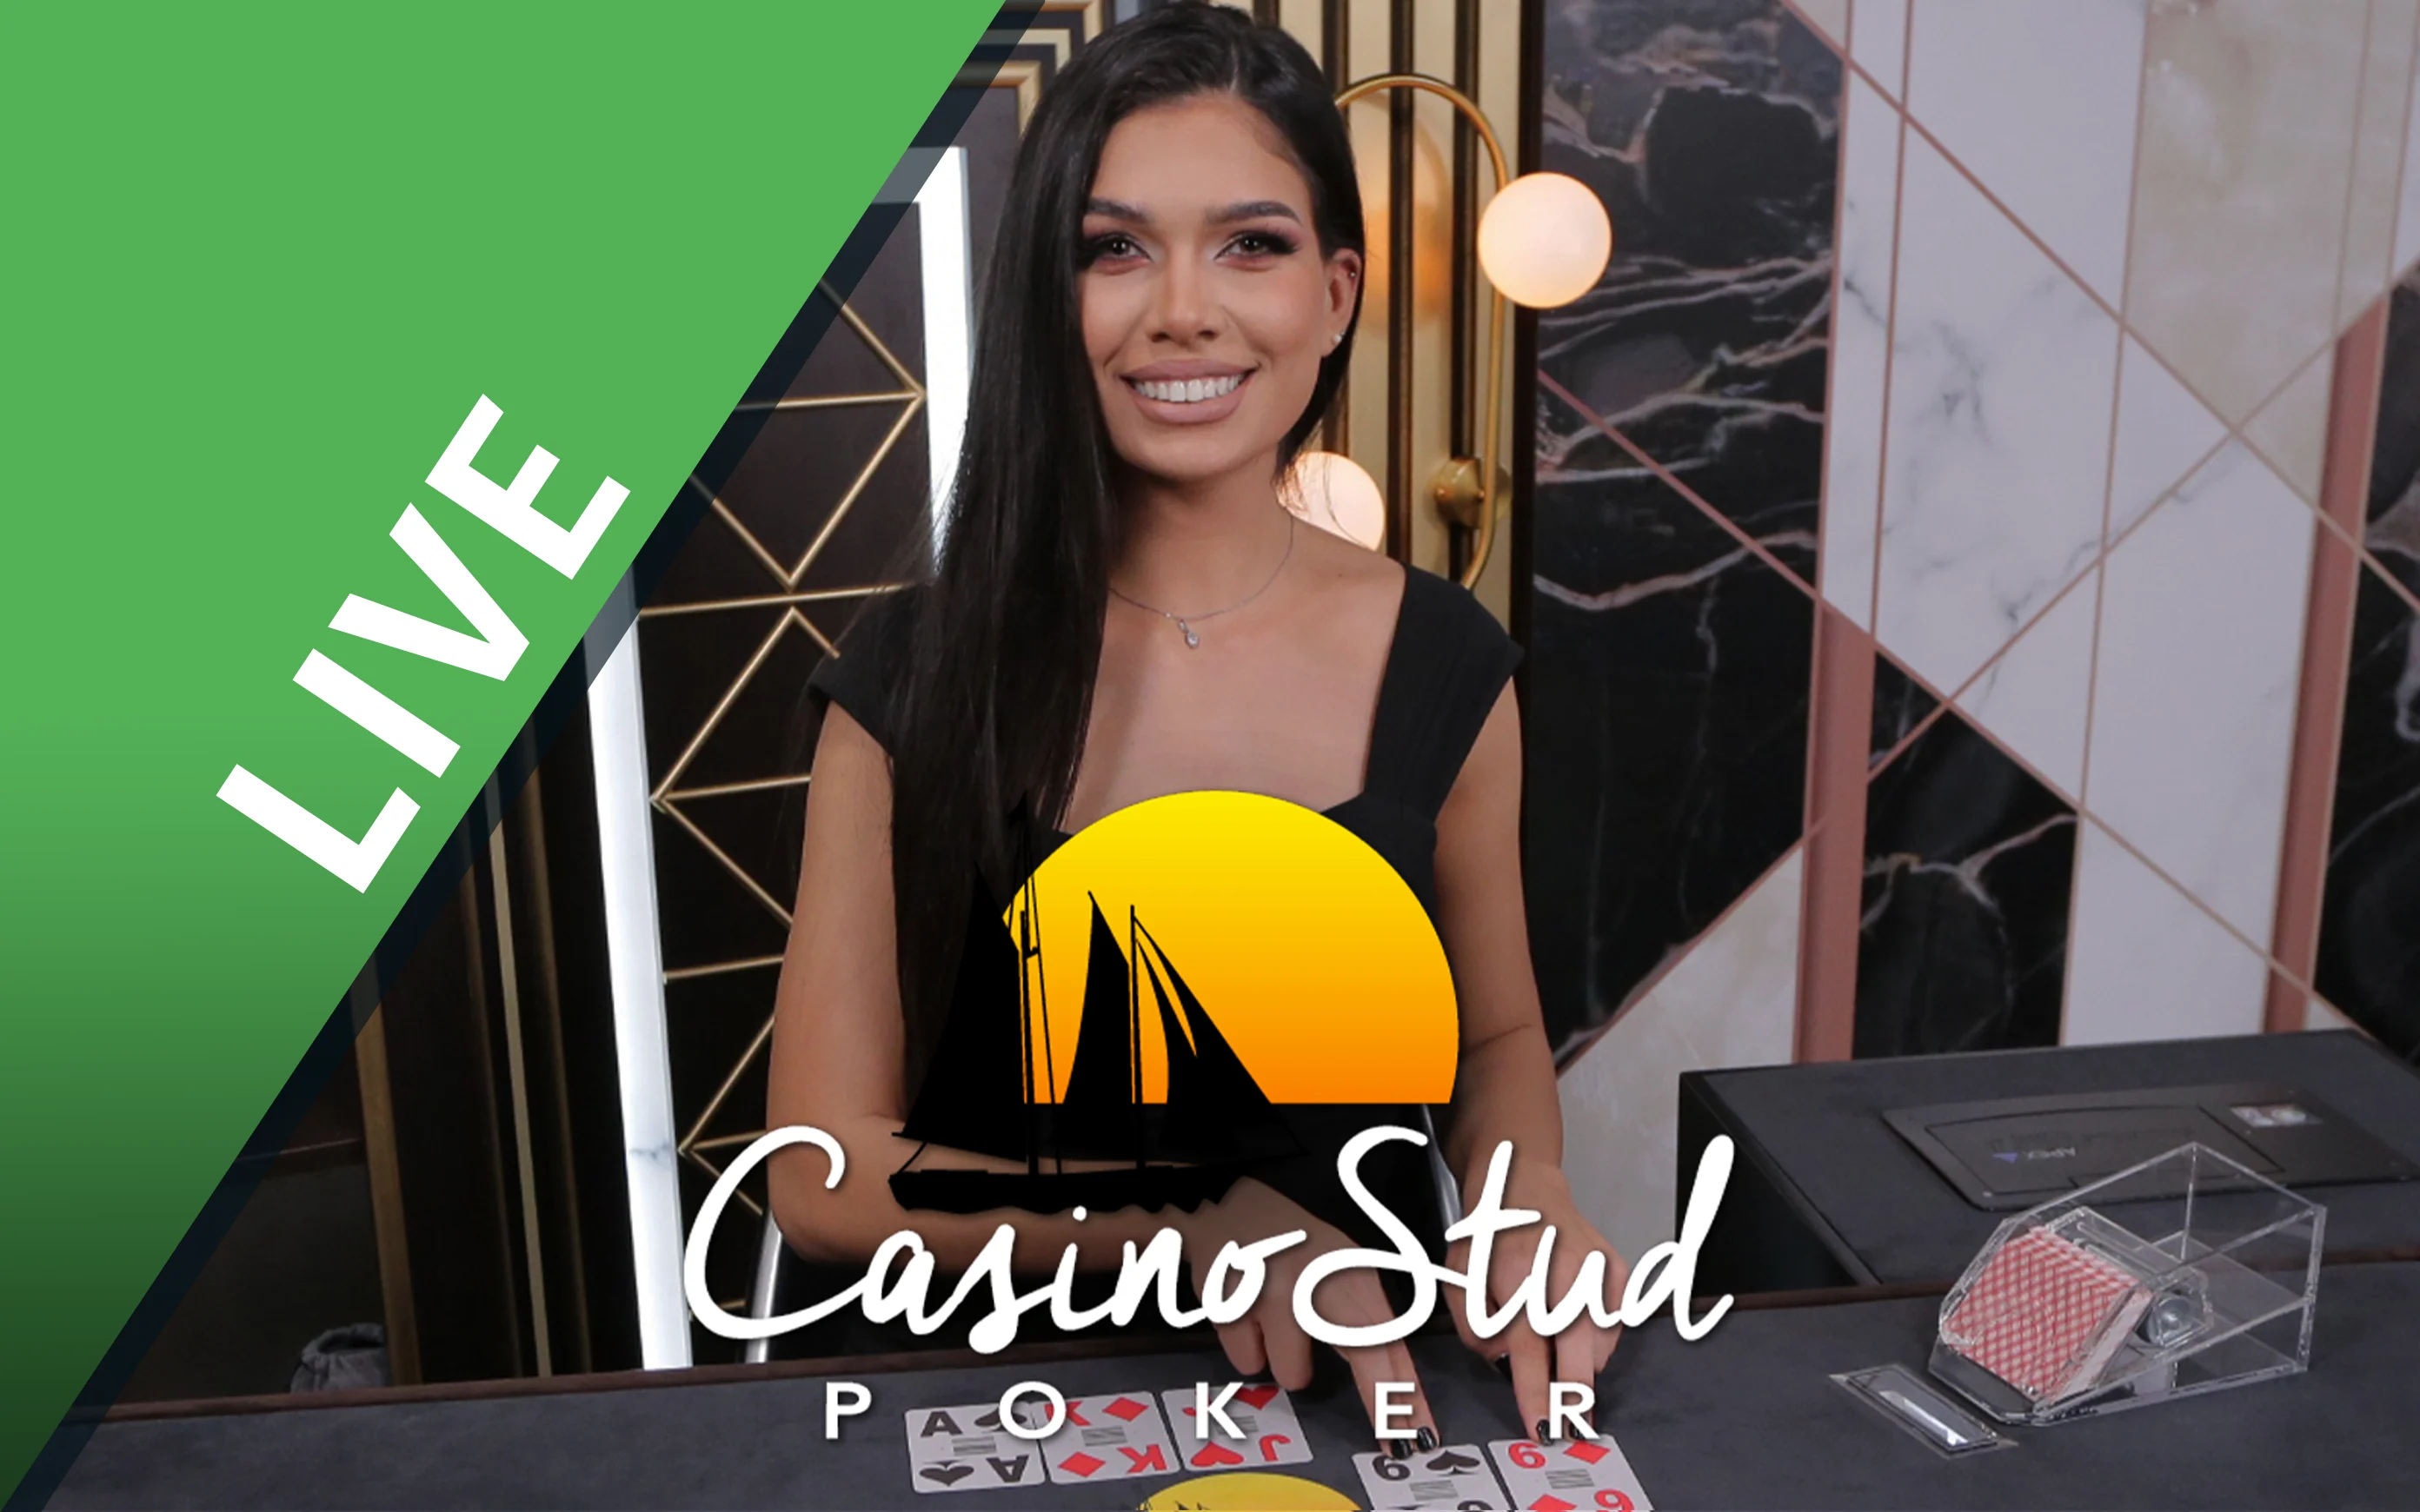 Luaj Casino Stud Poker në kazino Starcasino.be në internet